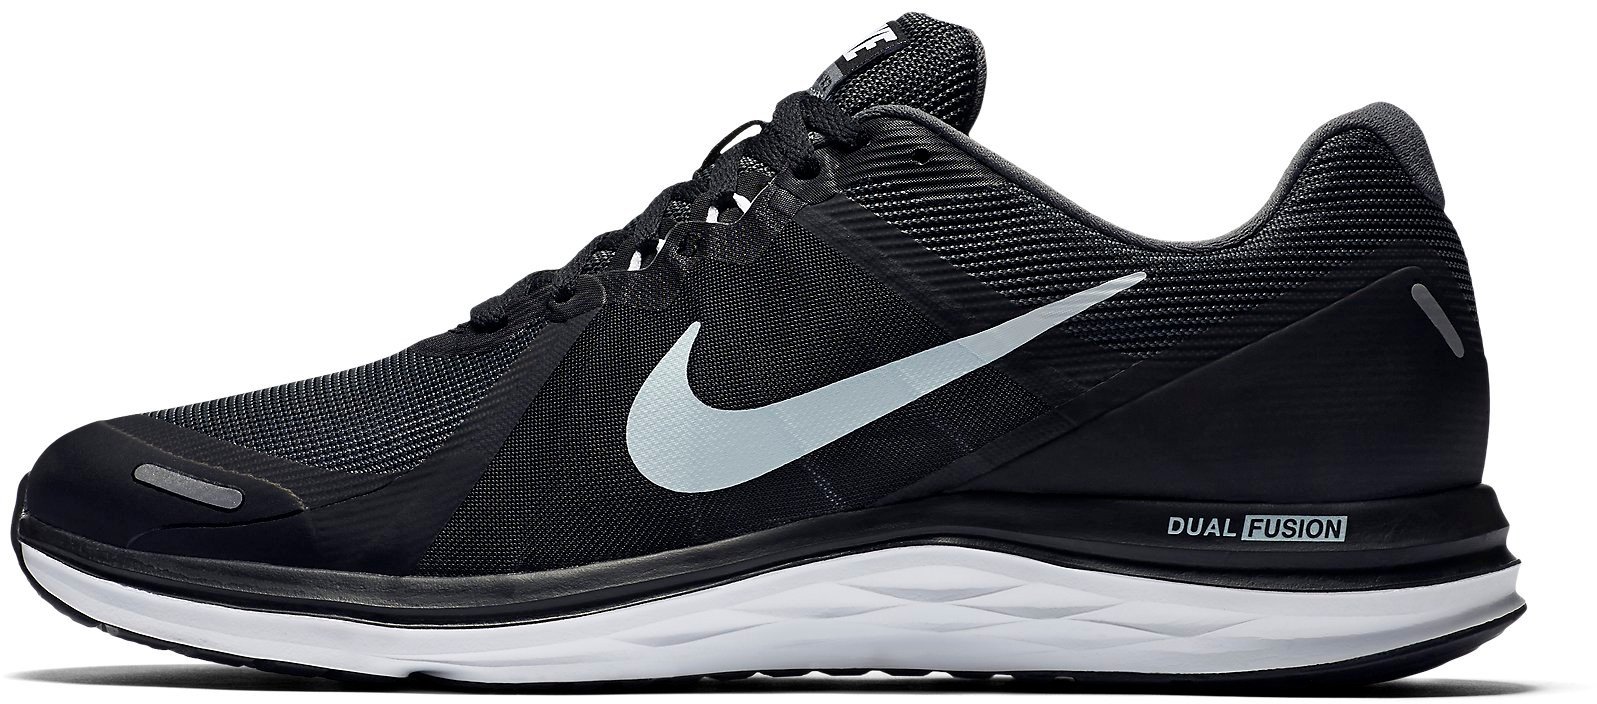 Running shoes Nike DUAL FUSION X 2 - Top4Running.com